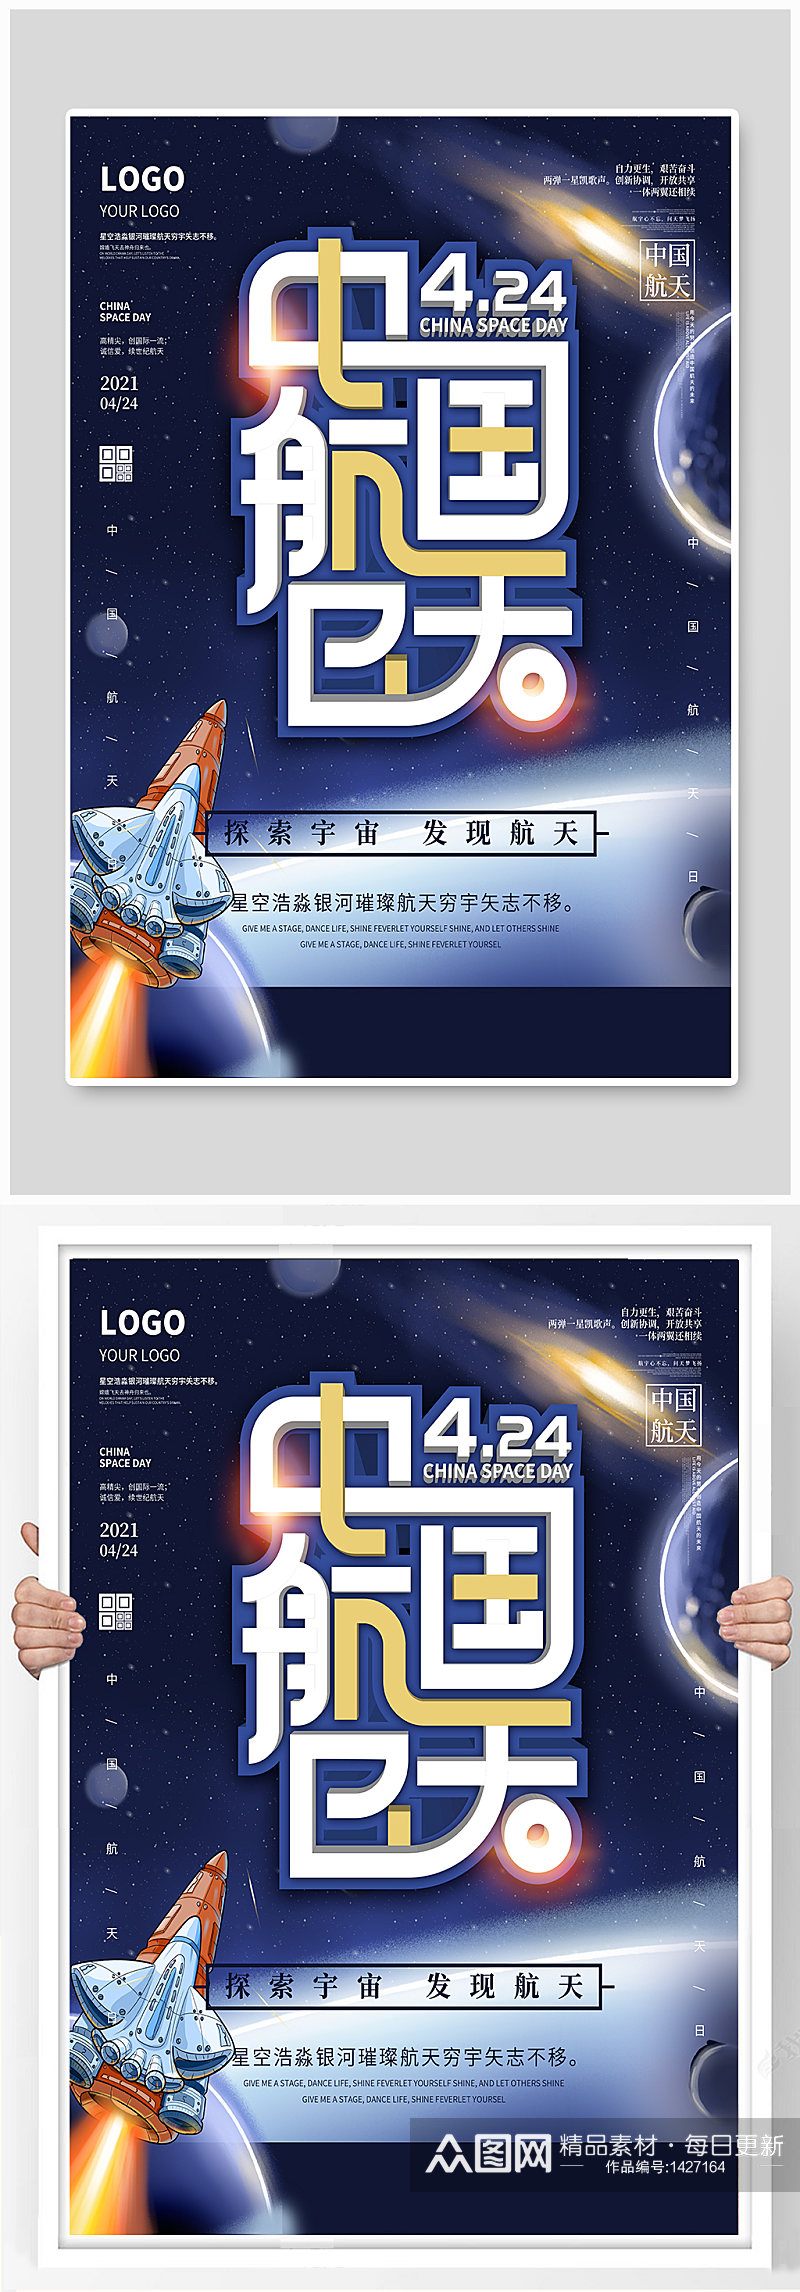 简约中国航天日宇宙海报素材